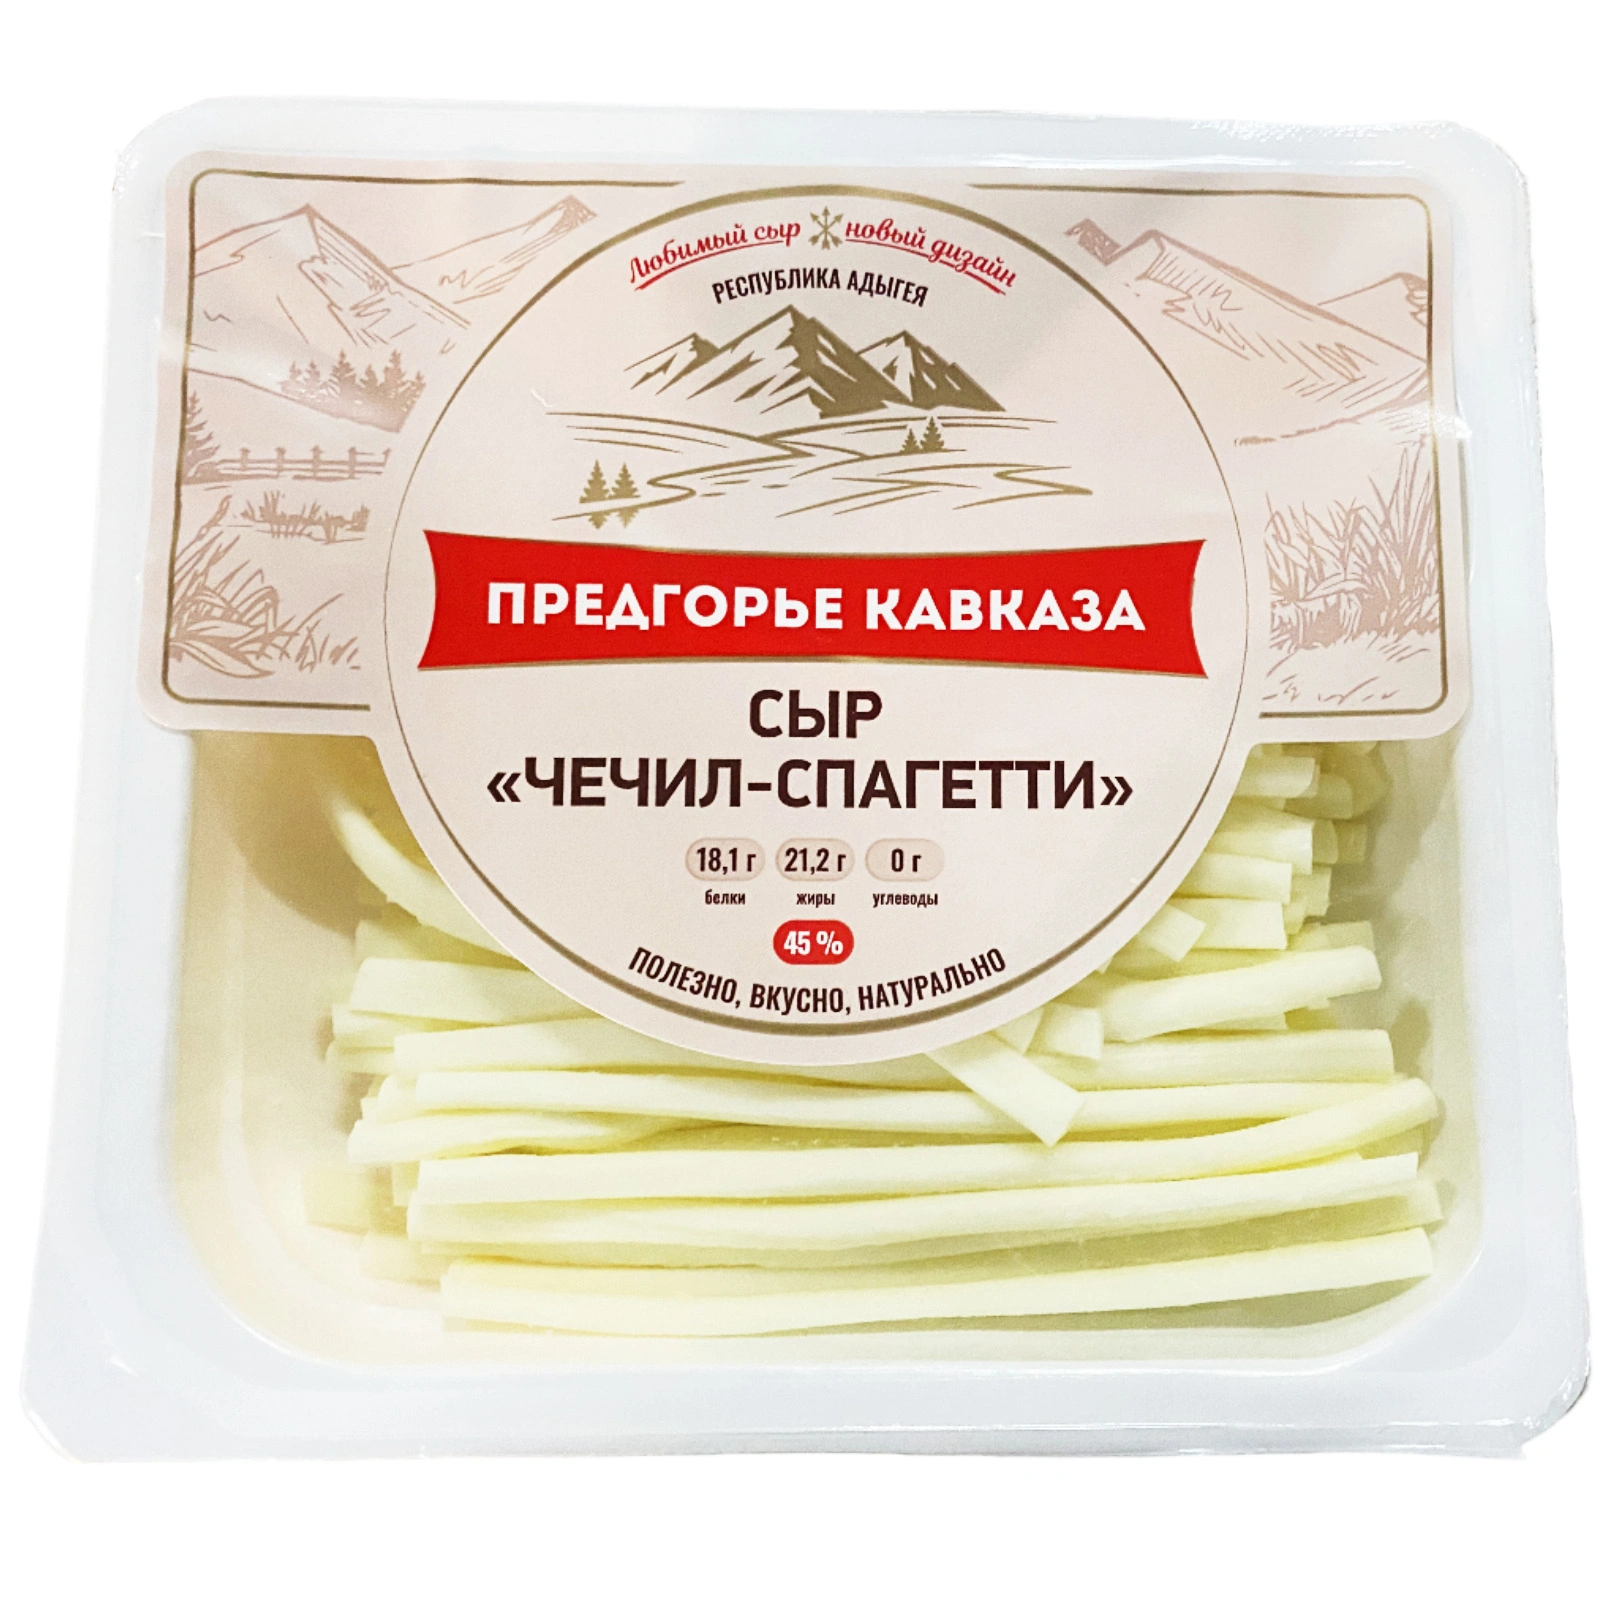 Сыр "Чечил-спагетти" 45%, фас. 150гр. "Предгорье Кавказа"